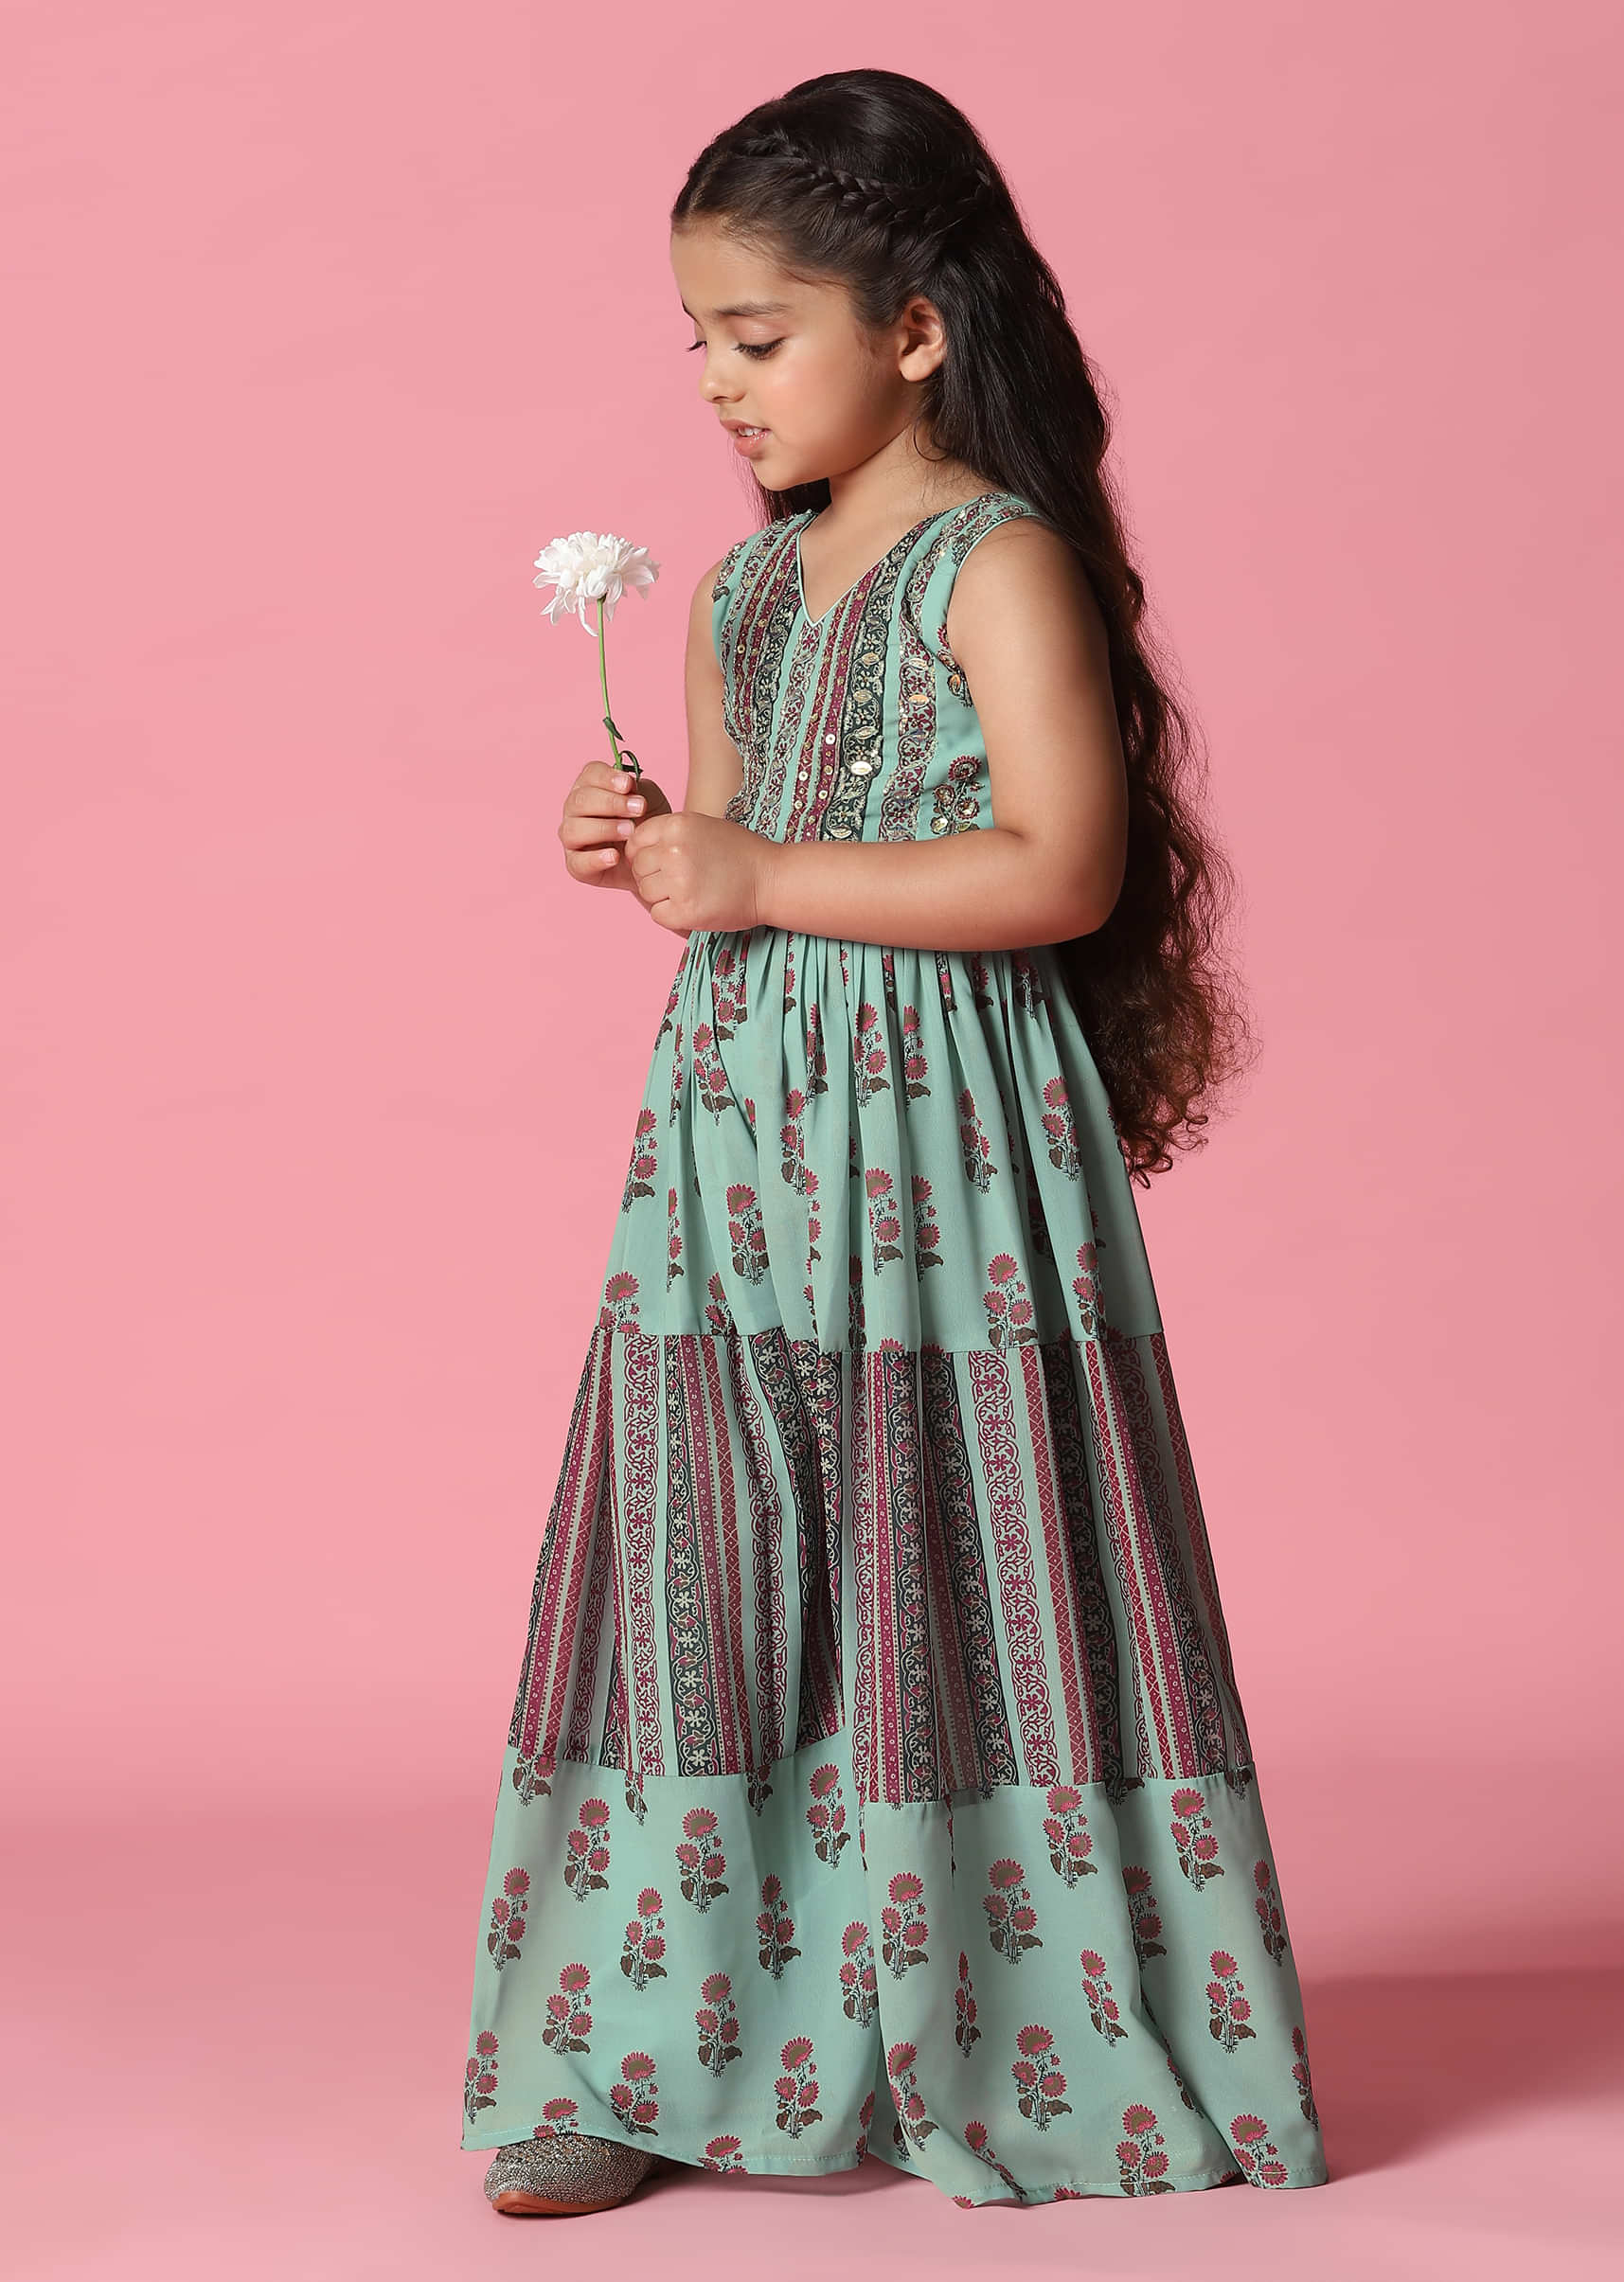 Girls Ethnic Wear - Buy Girls Ethnic Wear Online in India